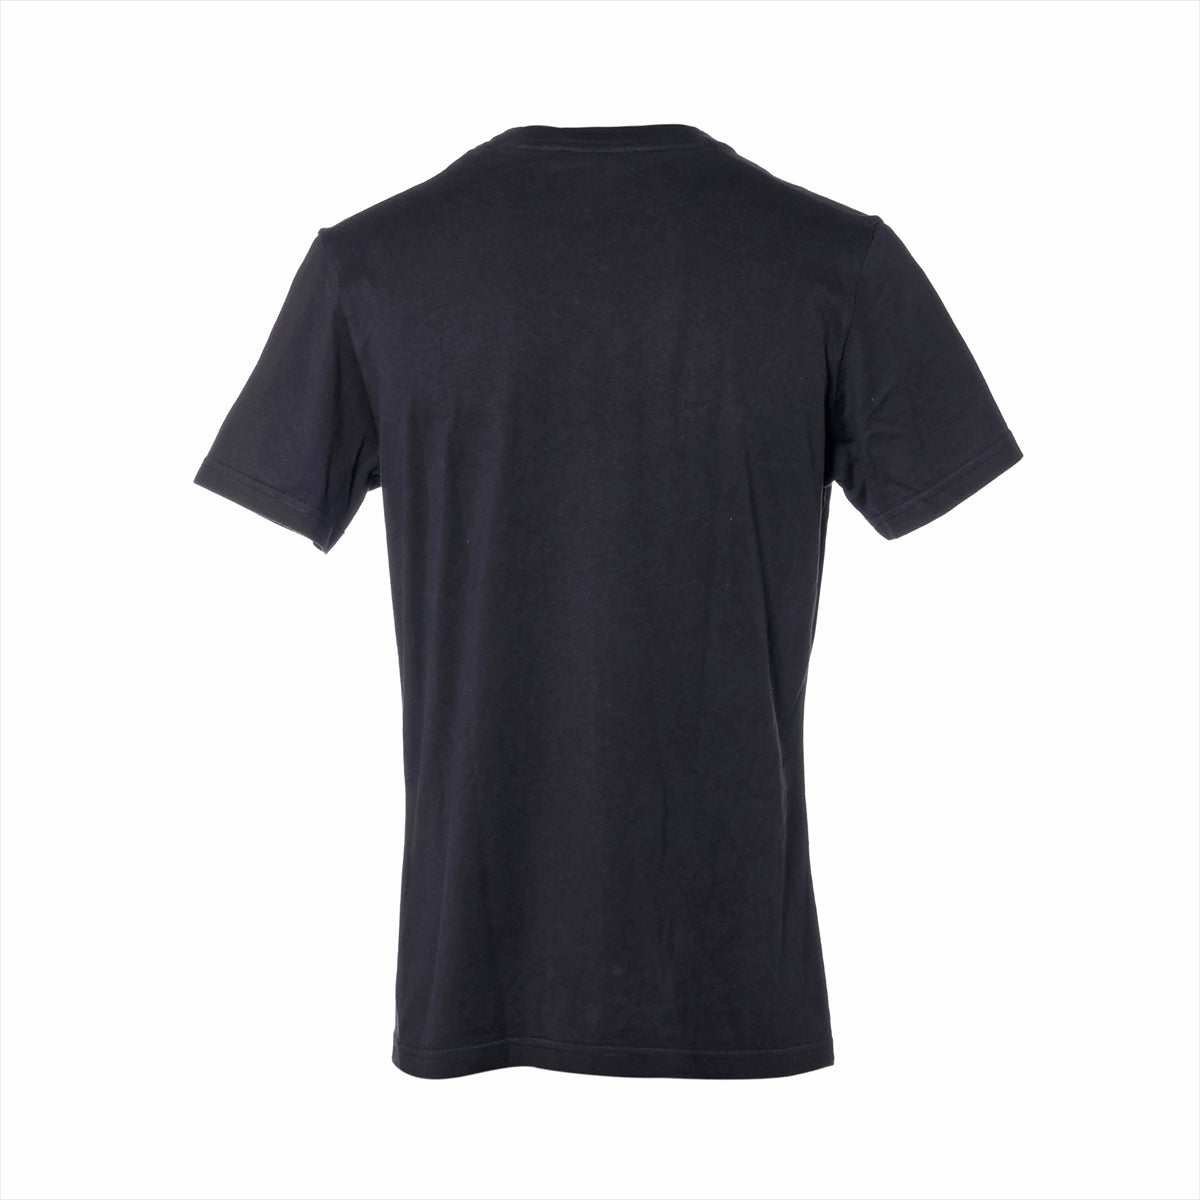 Moncler 20 years Cotton T-shirt L Men's Black  F20938C75900